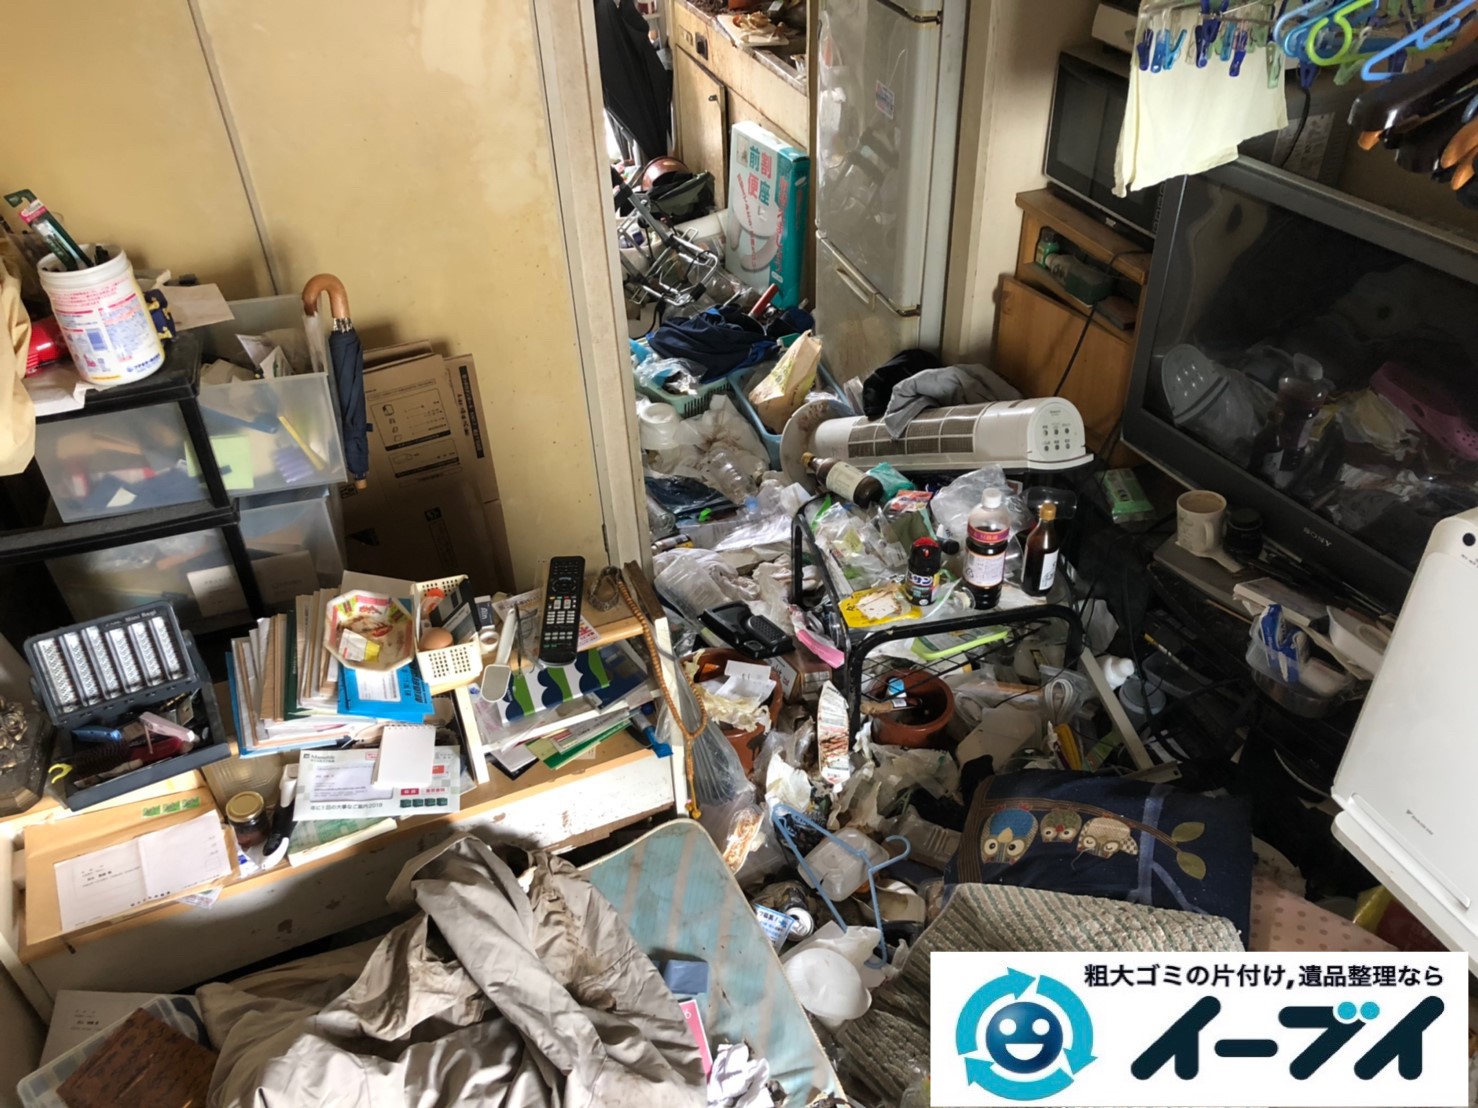 2019年7月10日大阪府堺市中区で食品ゴミや生活ゴミが散乱したゴミ屋敷の片付け作業。写真3